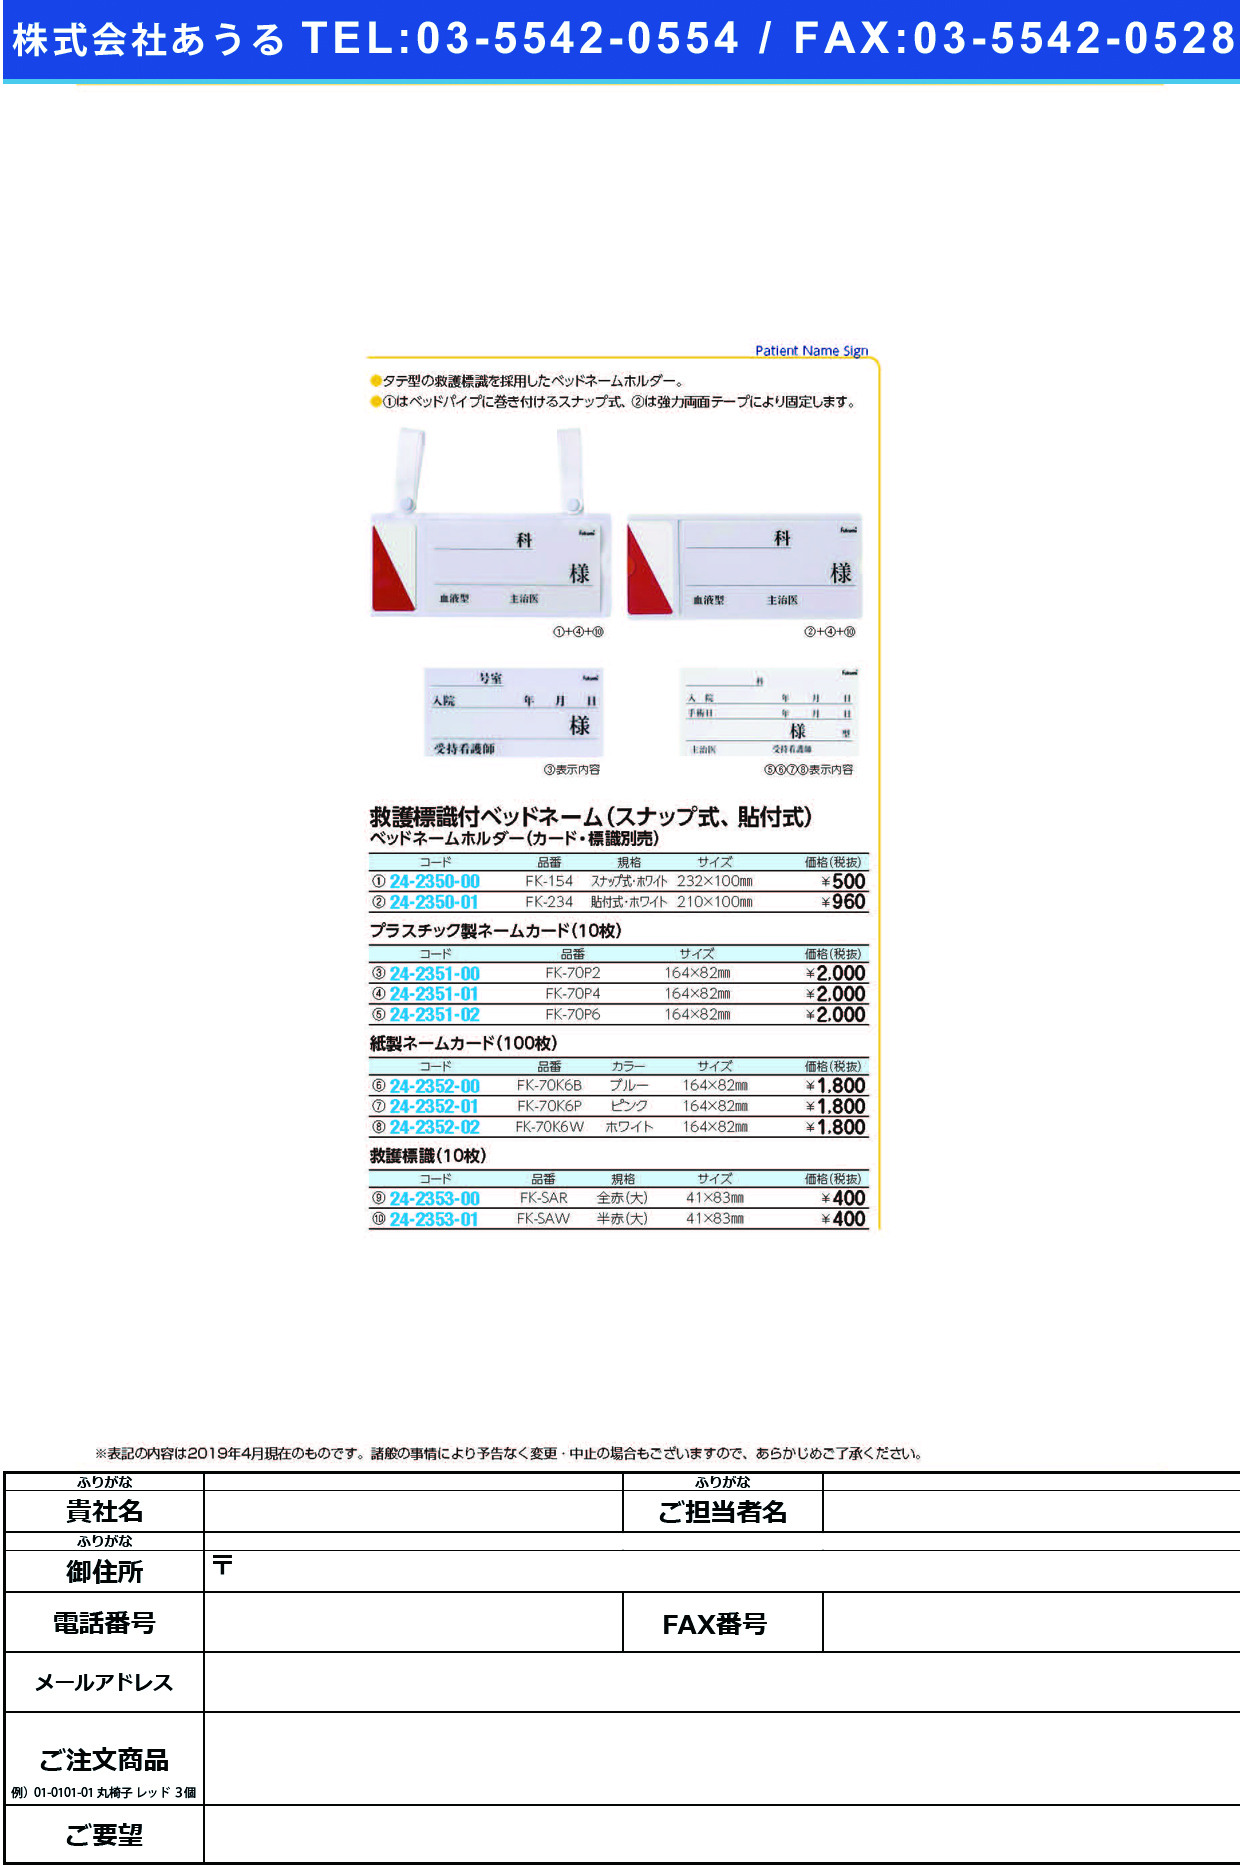 (24-2350-01)ベッドネームホルダー FK-234(ﾊﾘﾂｹｼｷ) ﾍﾞｯﾄﾞﾈｰﾑﾎﾙﾀﾞｰ【1枚単位】【2019年カタログ商品】